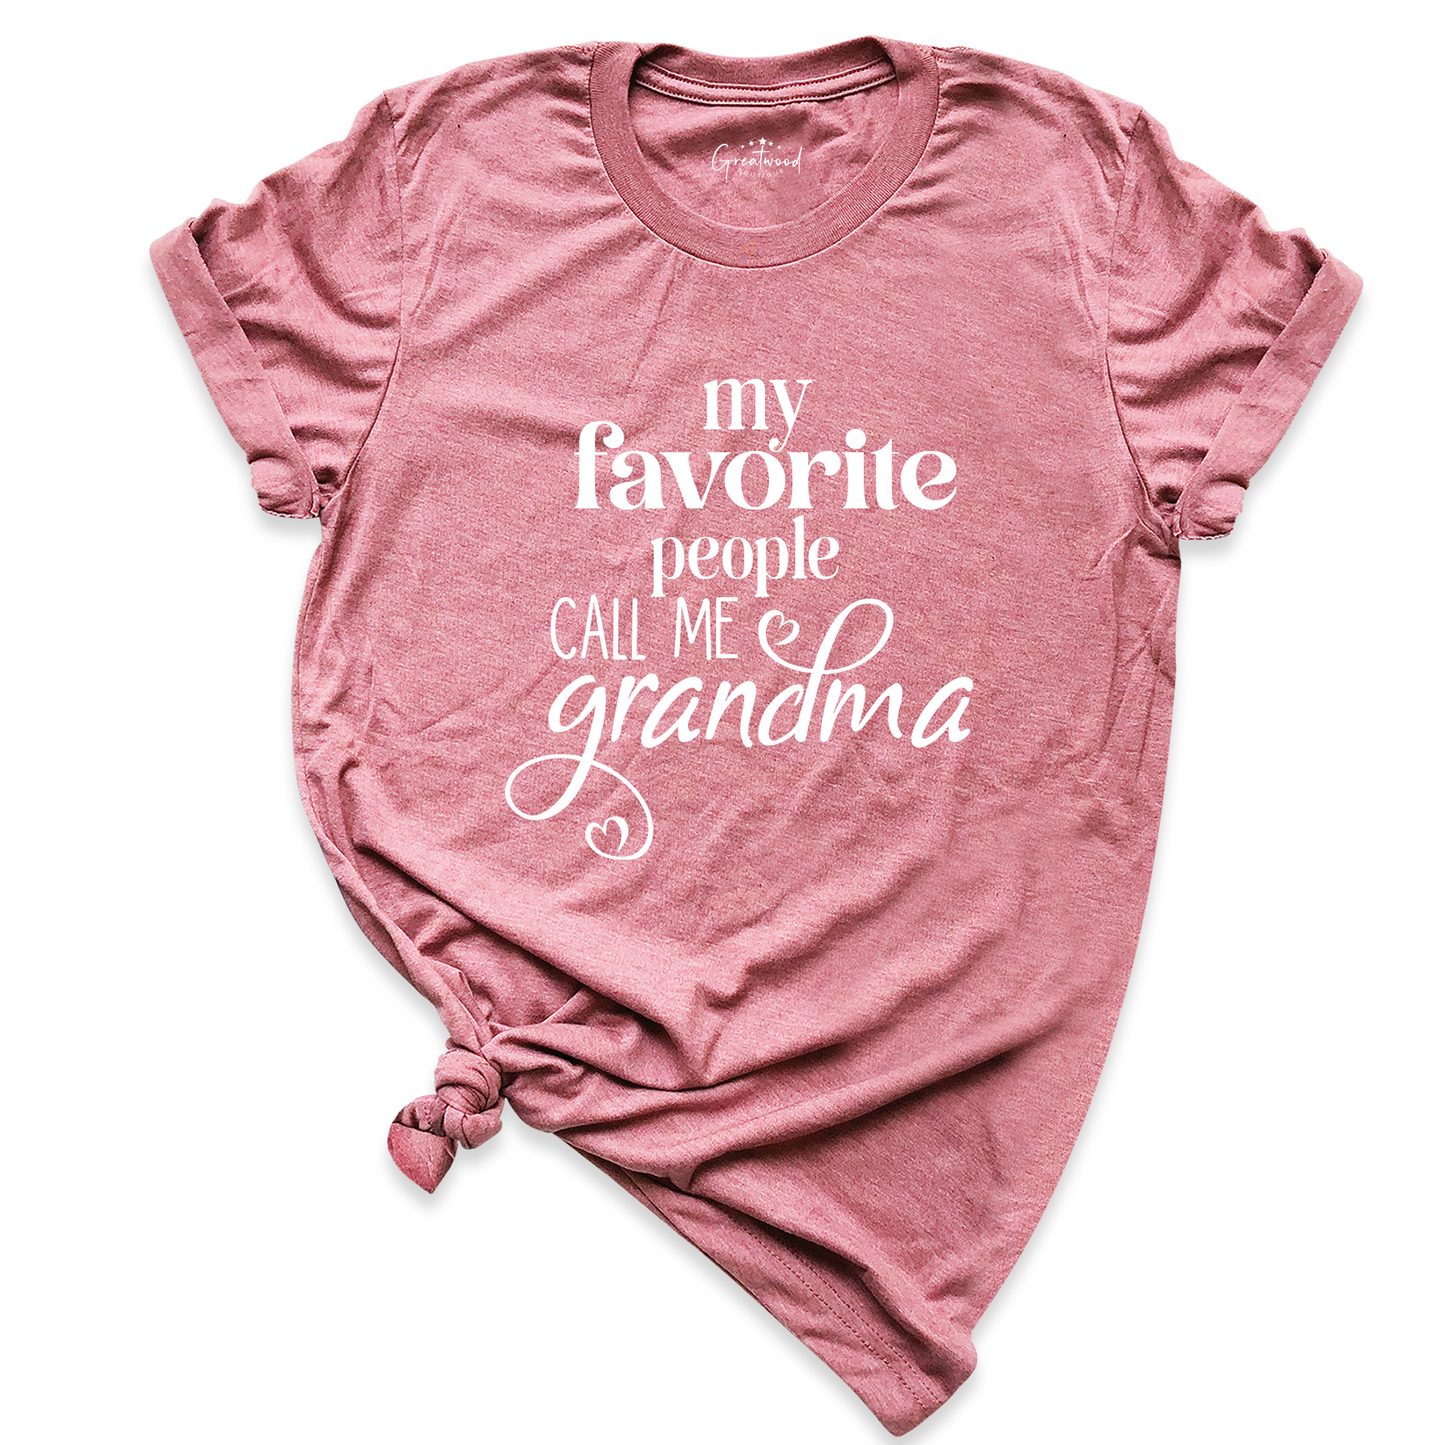 My Favorite People Call Me Grandma Shirt